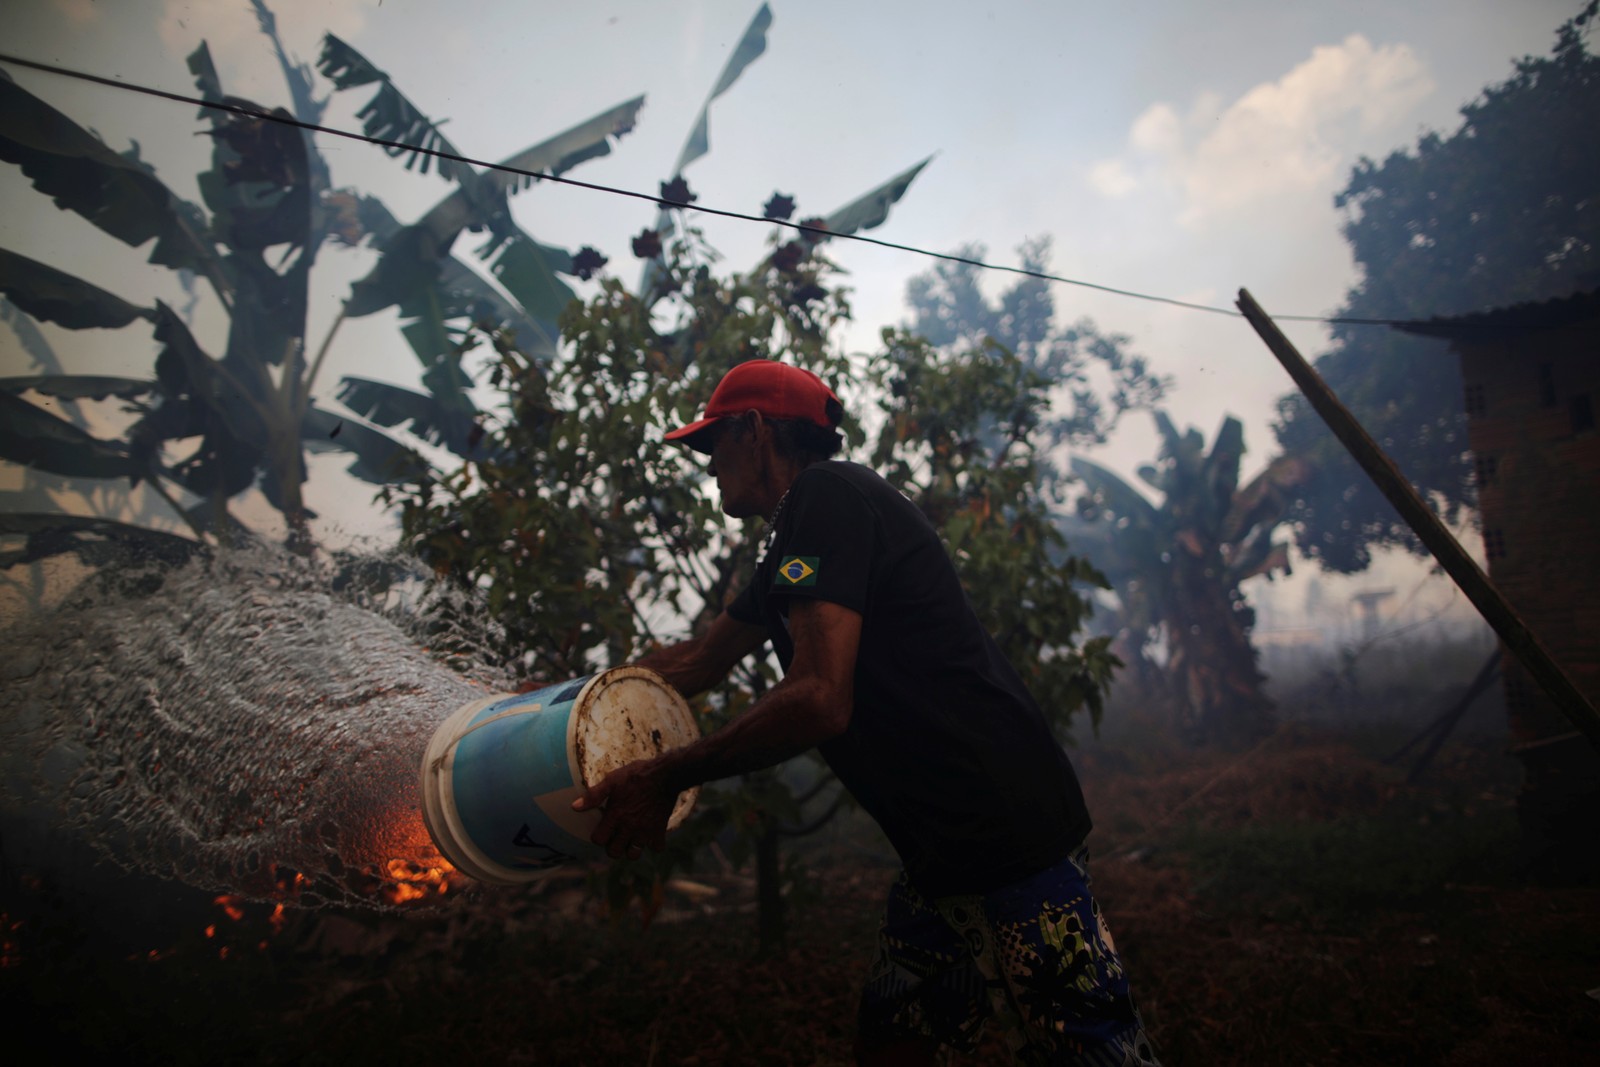 Rosalino de Oliveira joga água tentando proteger sua casa enquanto o fogo se aproxima em uma área da floresta amazônica, perto de Porto Velho, RondôniaREUTERS